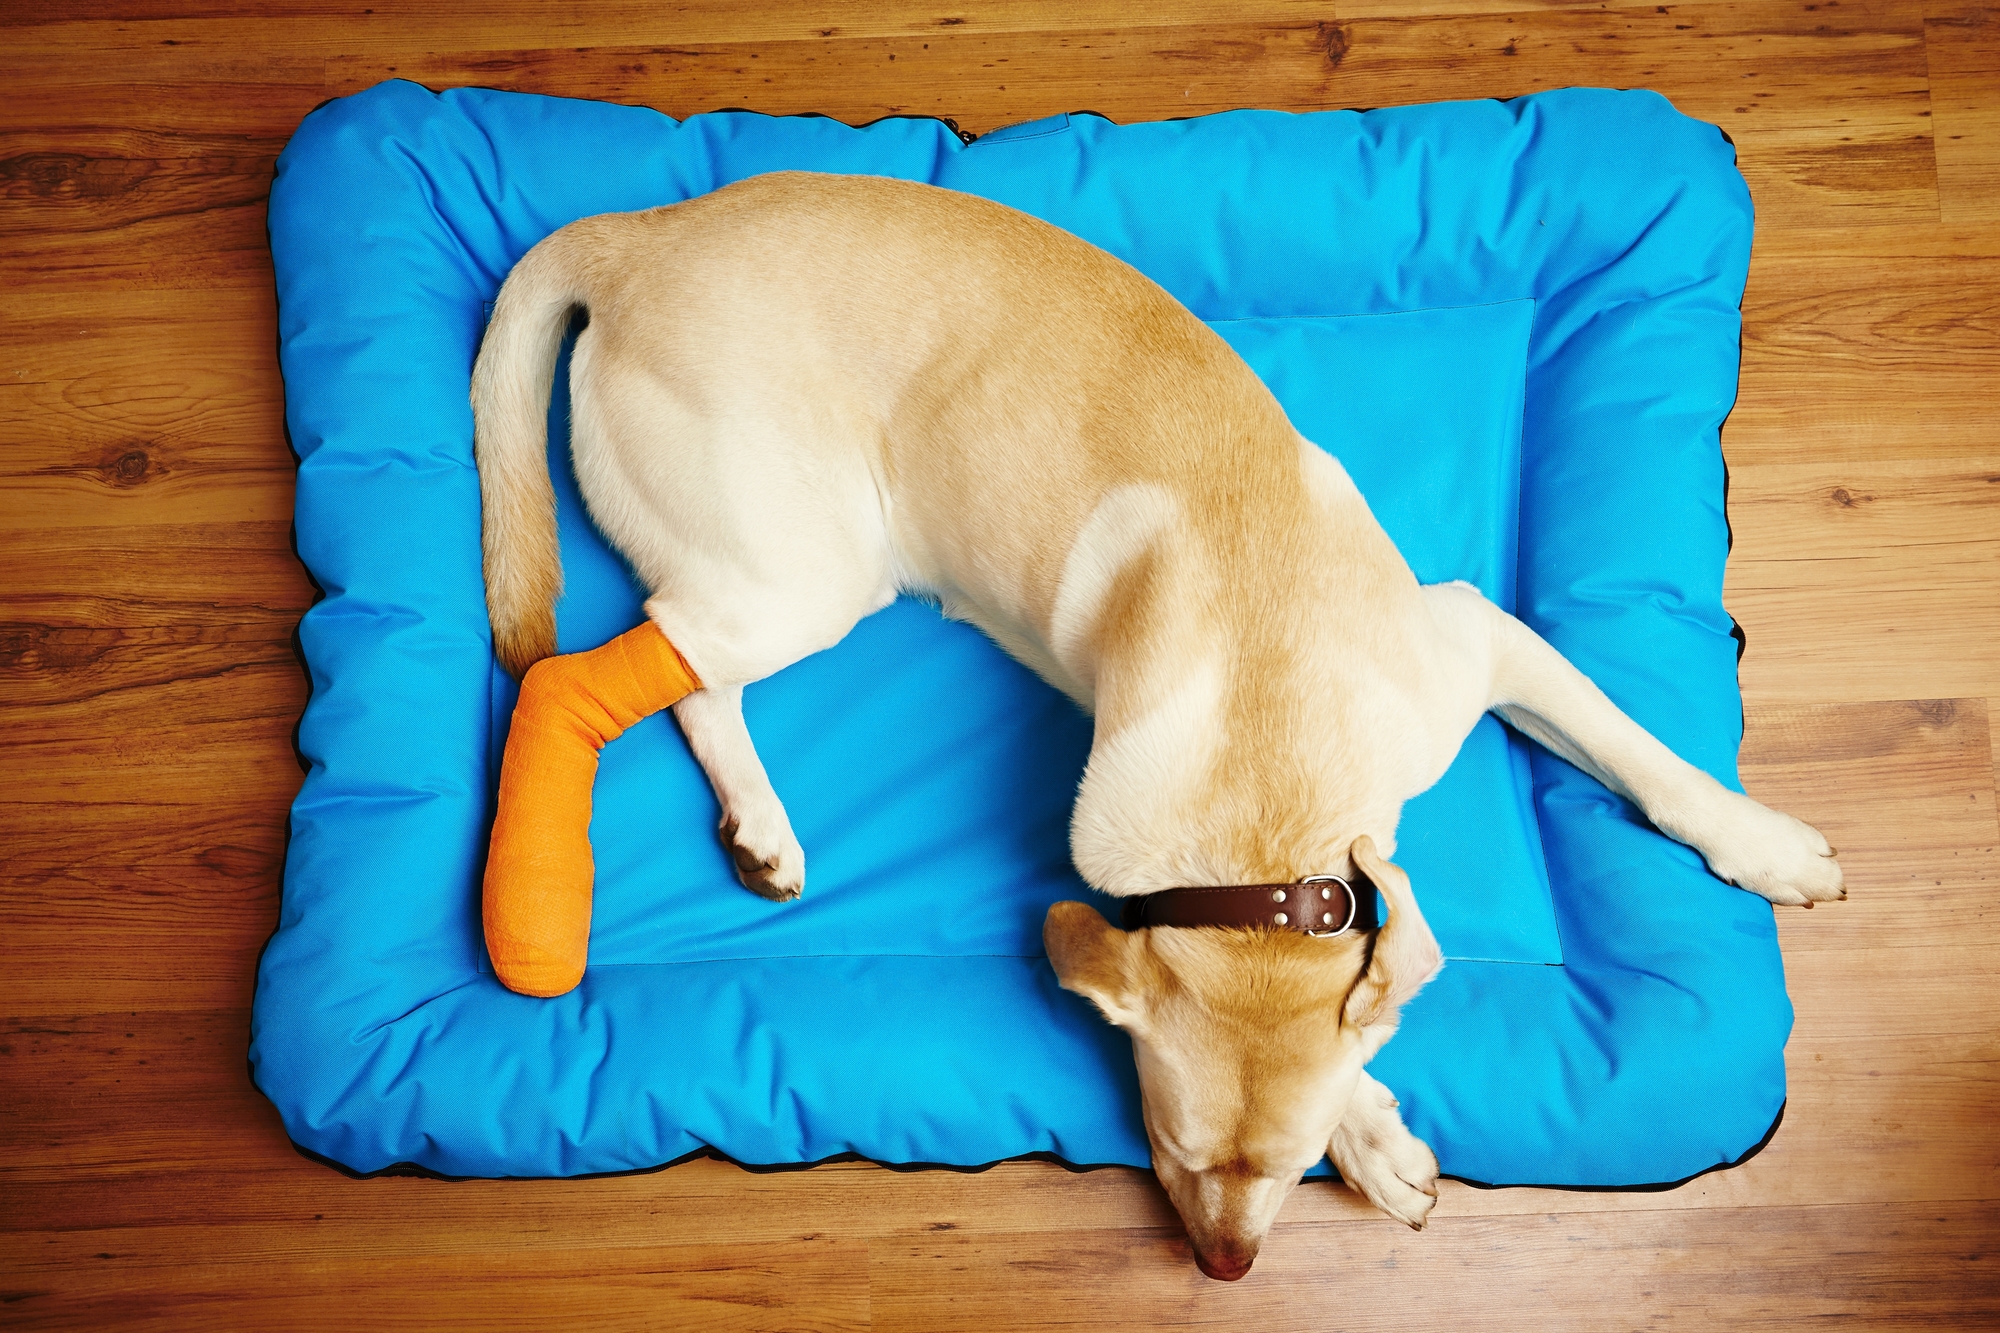 「膝蓋骨」の脱臼は、犬によく見られるケガの症状です。